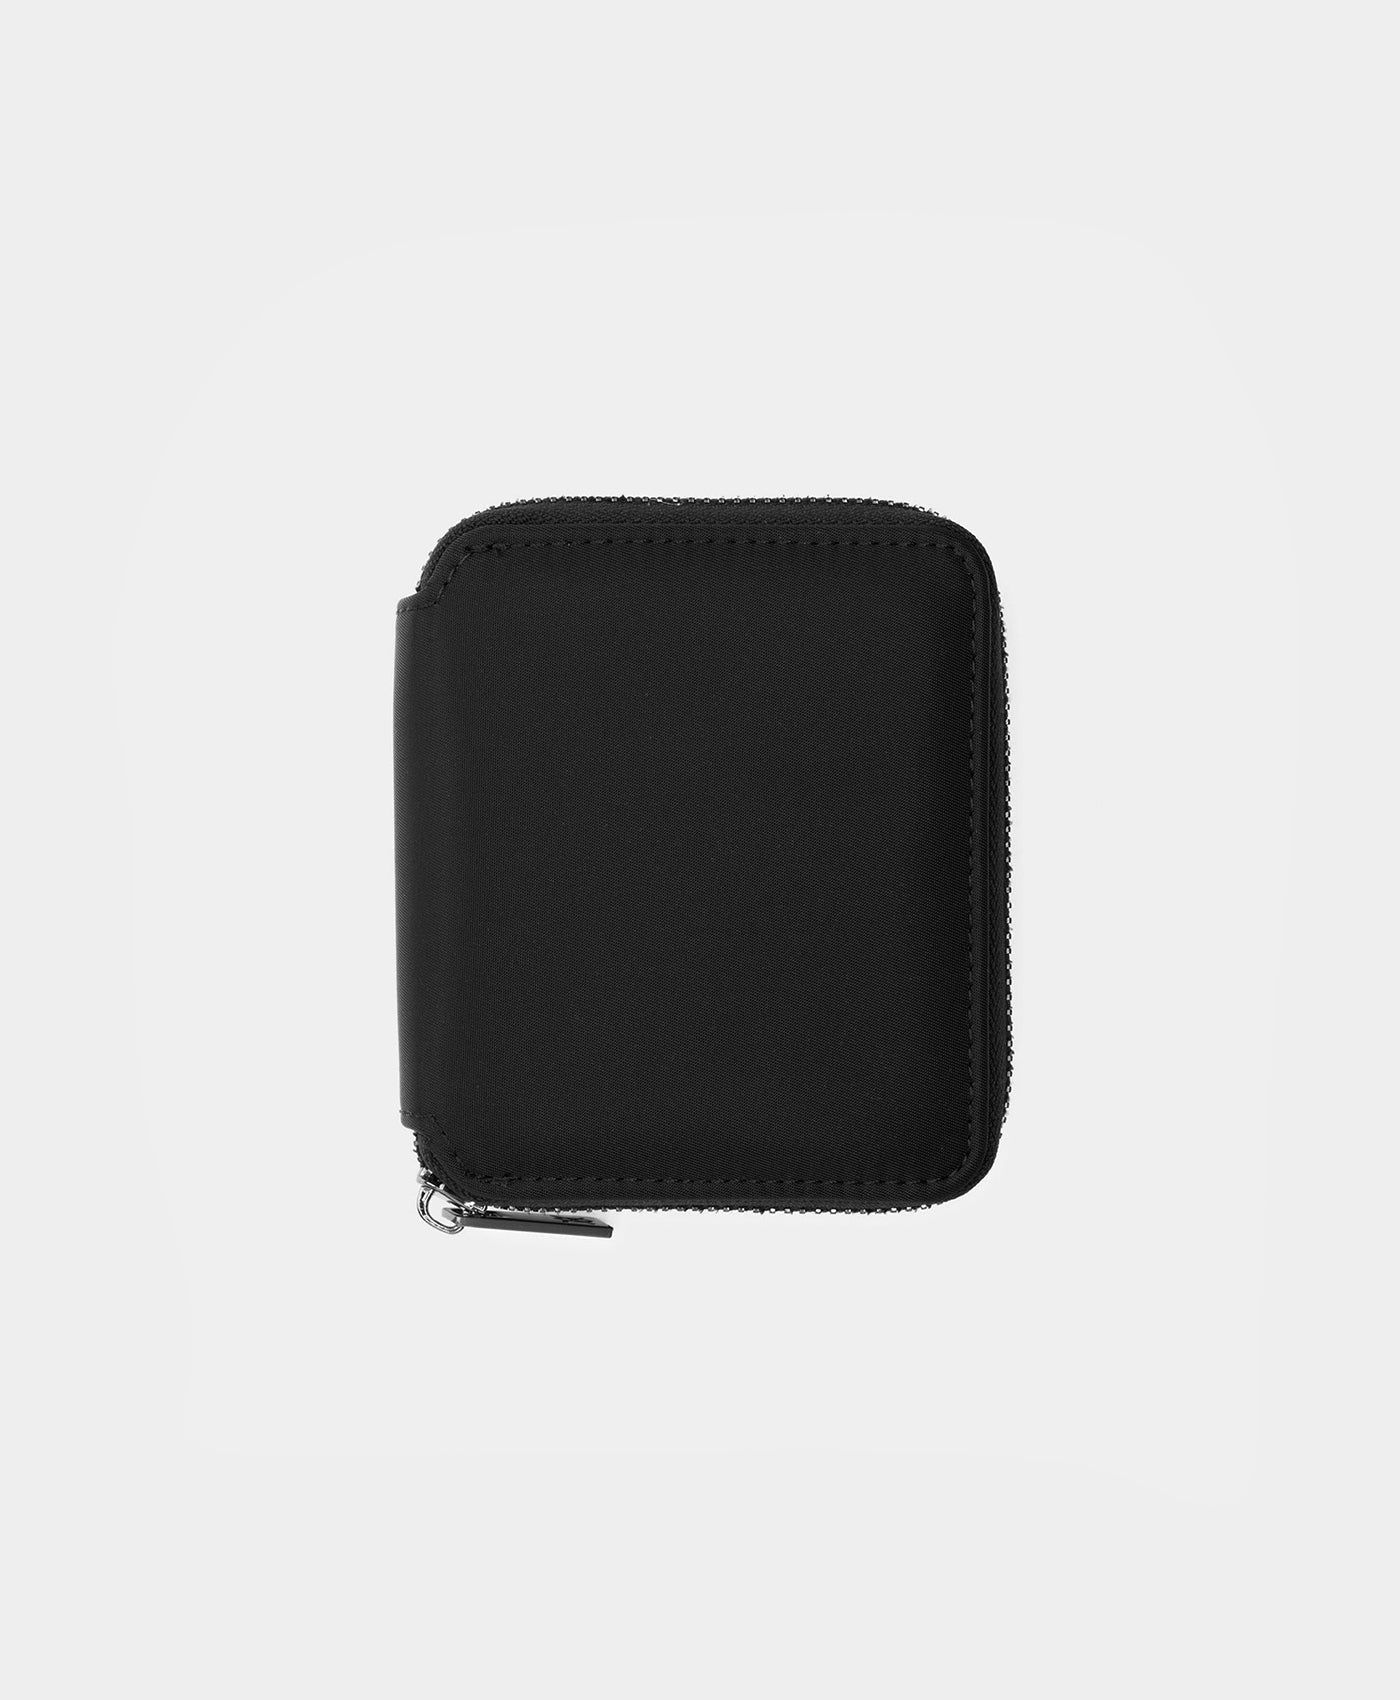 DP - Black Enolan Wallet - Packshot - Rear